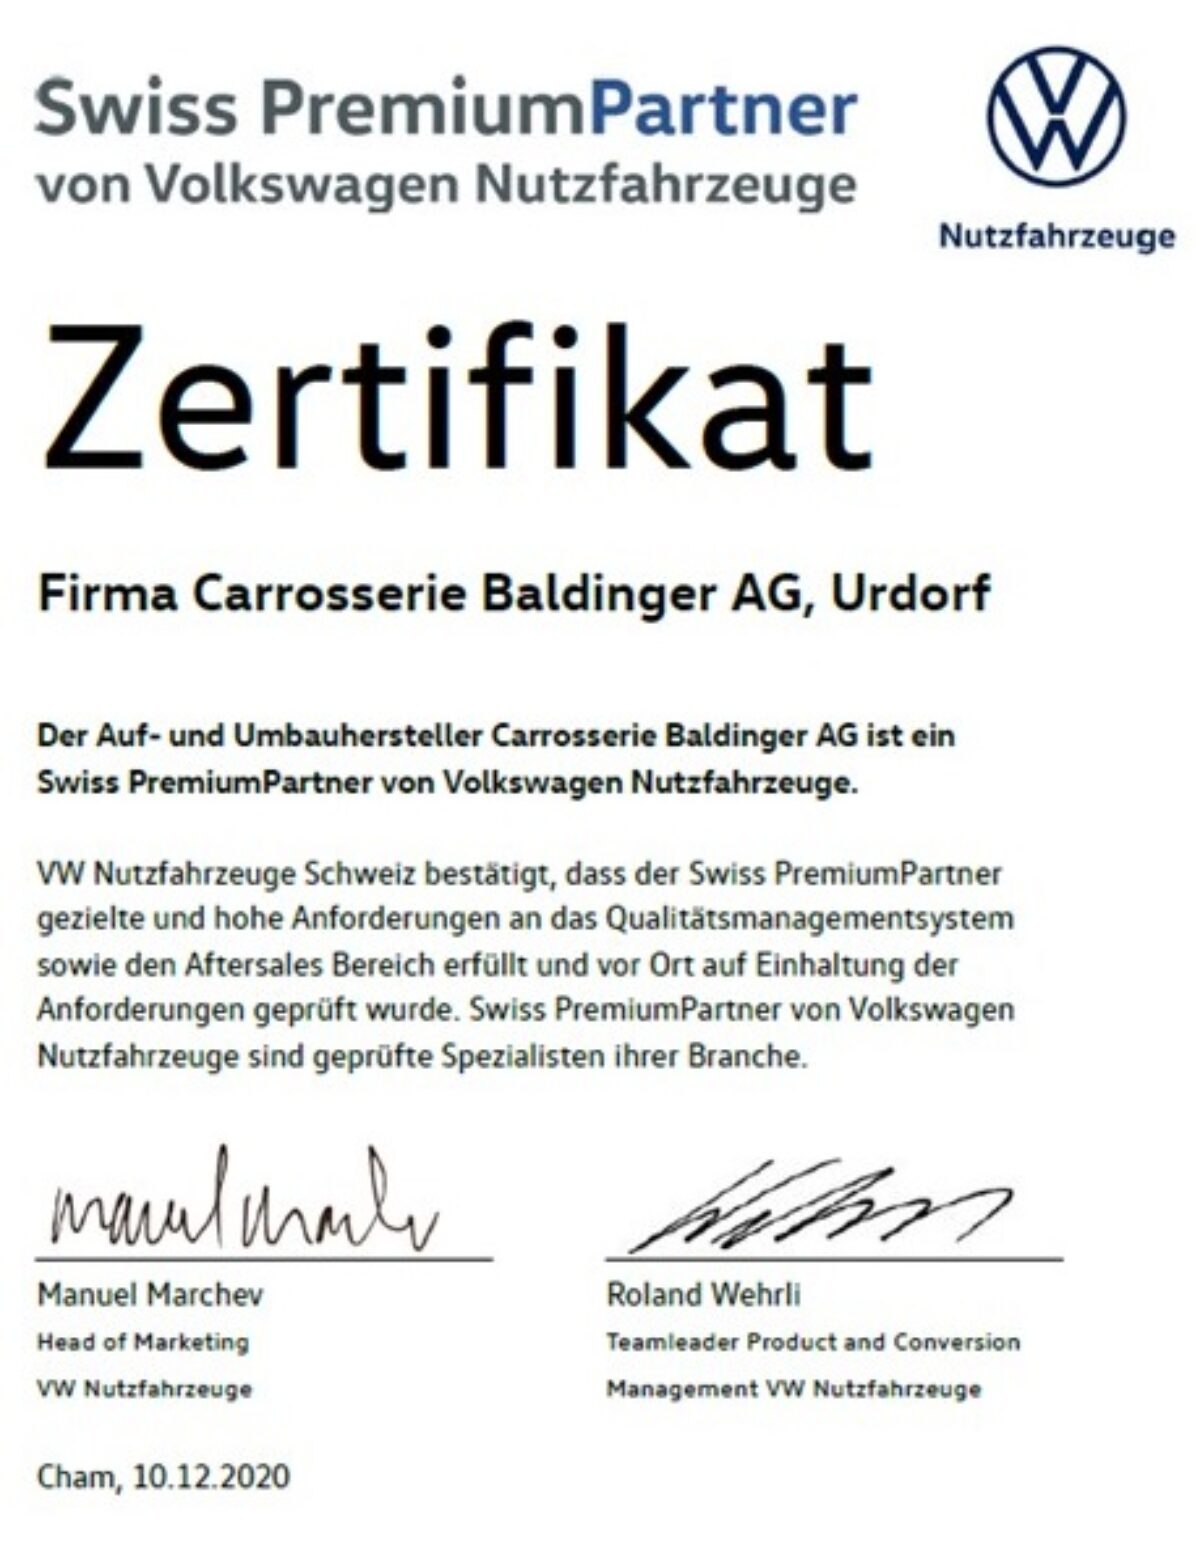 Wir sind Swiss PremiumPartner von Volkswagen Nutzfahrzeuge - Baldinger Fahrzeugbau Urdorf